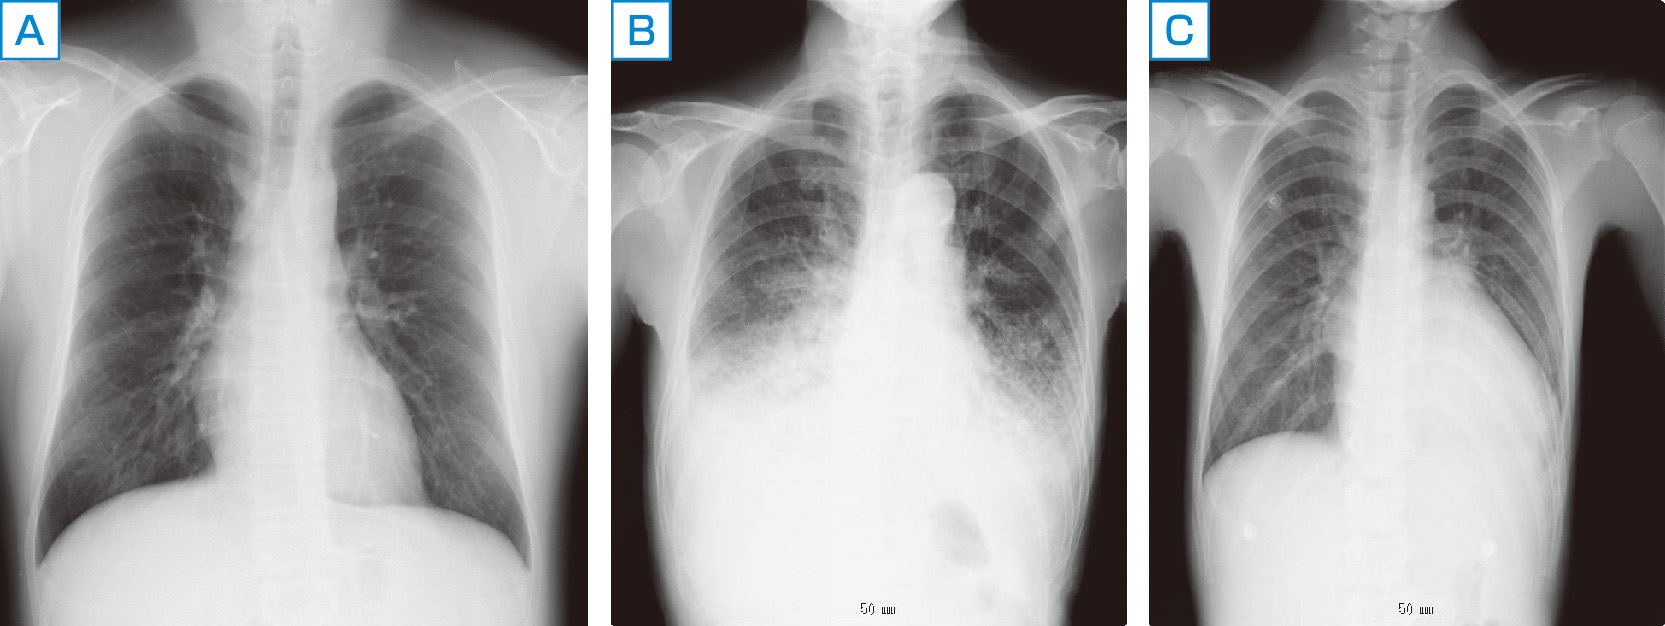 図1　健常者，急性増悪をきたした慢性心不全患者の胸部X線写真． A：健常者，B：HFpEF，C：HFrEFの急性増悪慢性心不全患者．